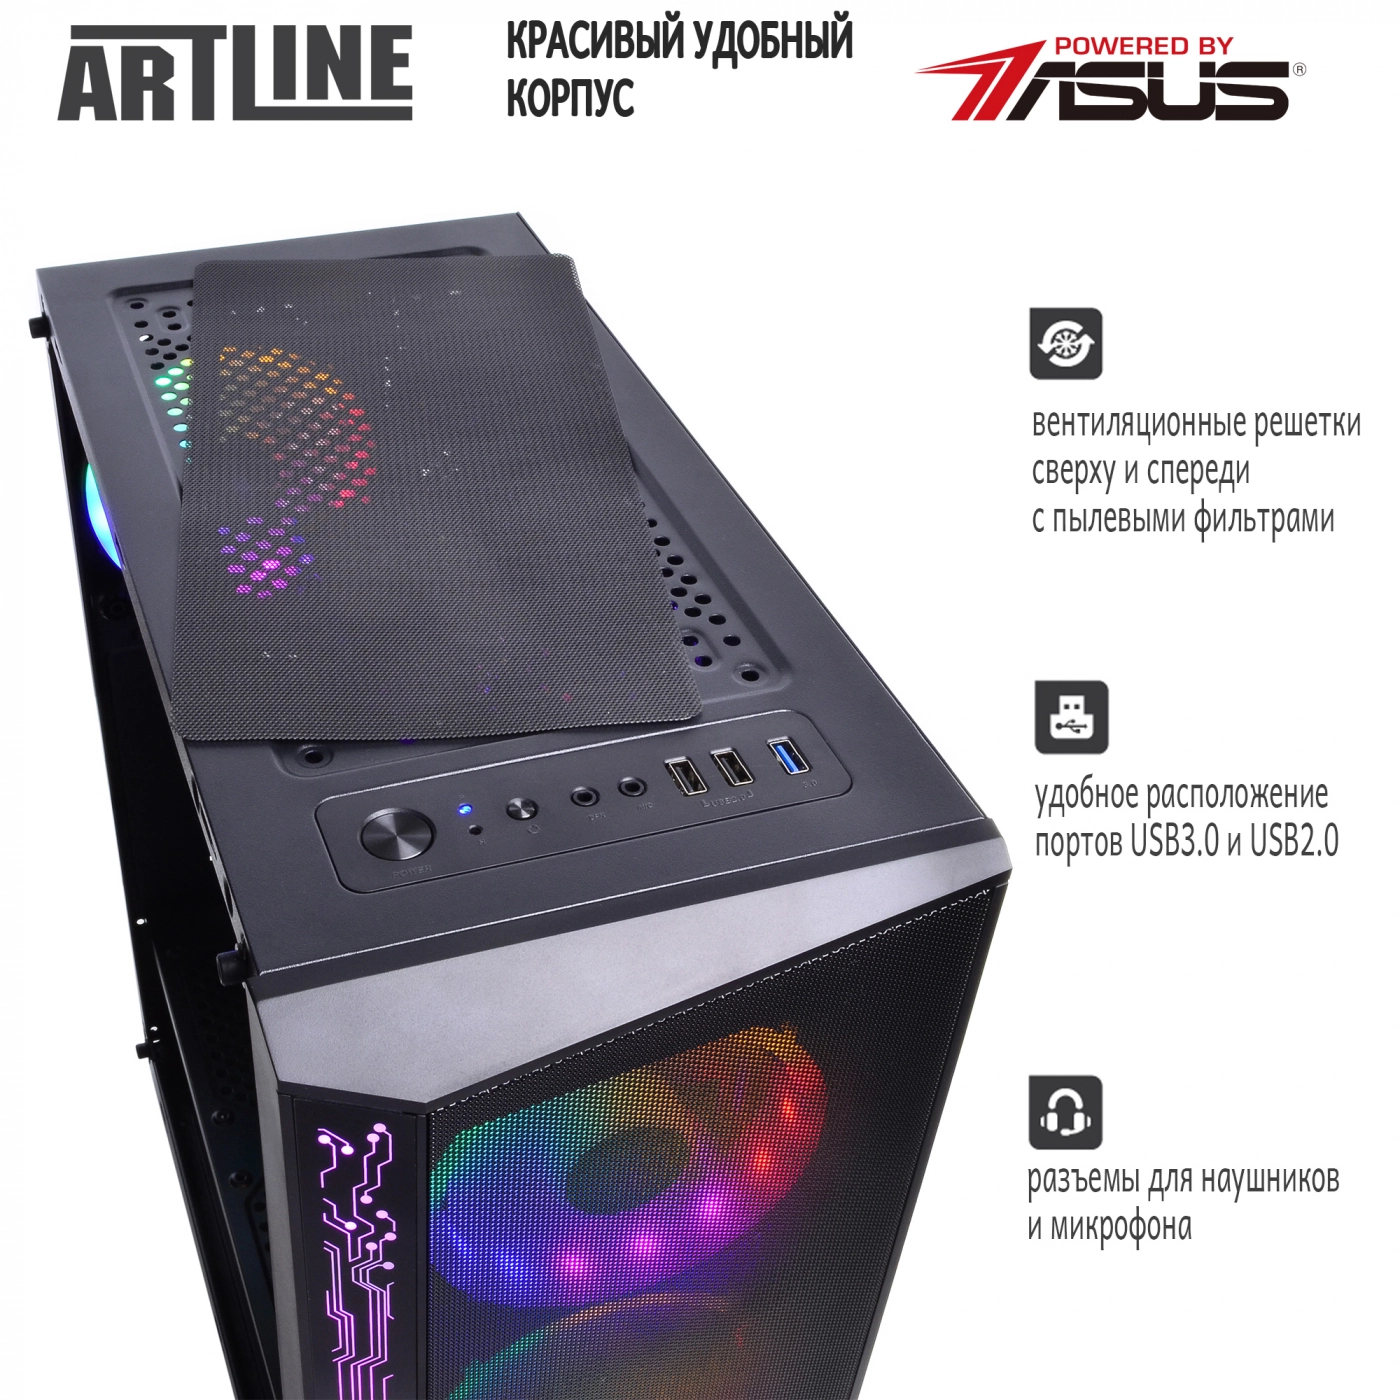 Купить Компьютер ARTLINE Gaming X39v43 - фото 4